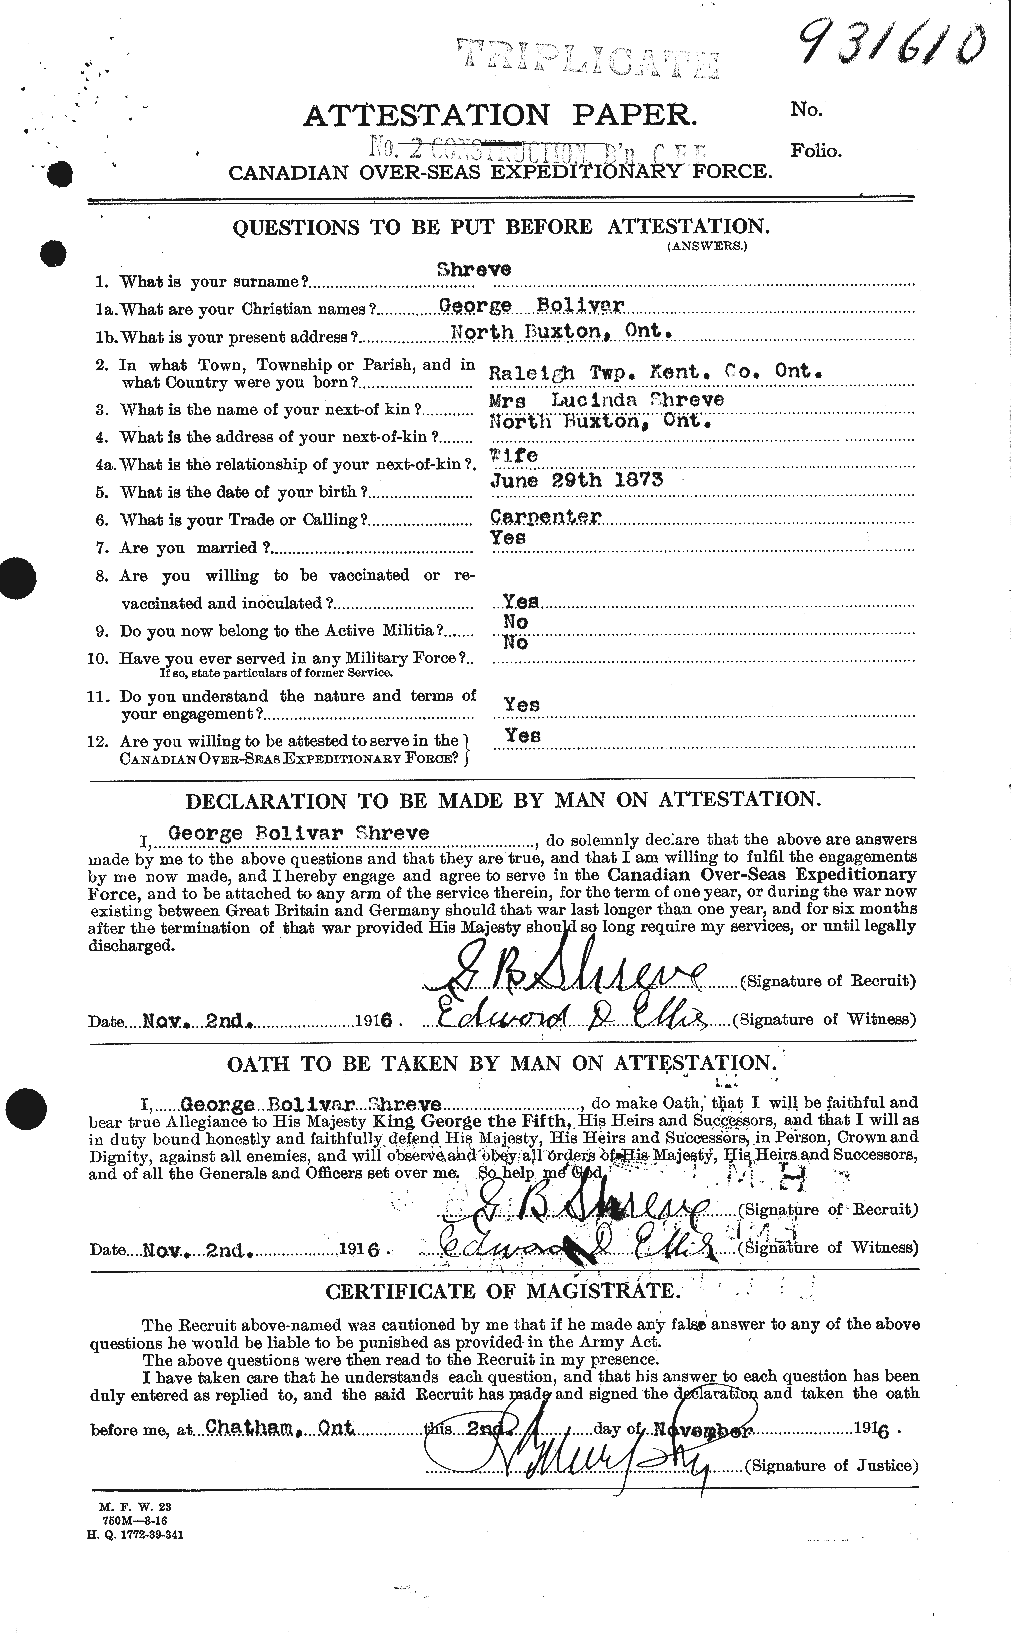 Dossiers du Personnel de la Première Guerre mondiale - CEC 092472a